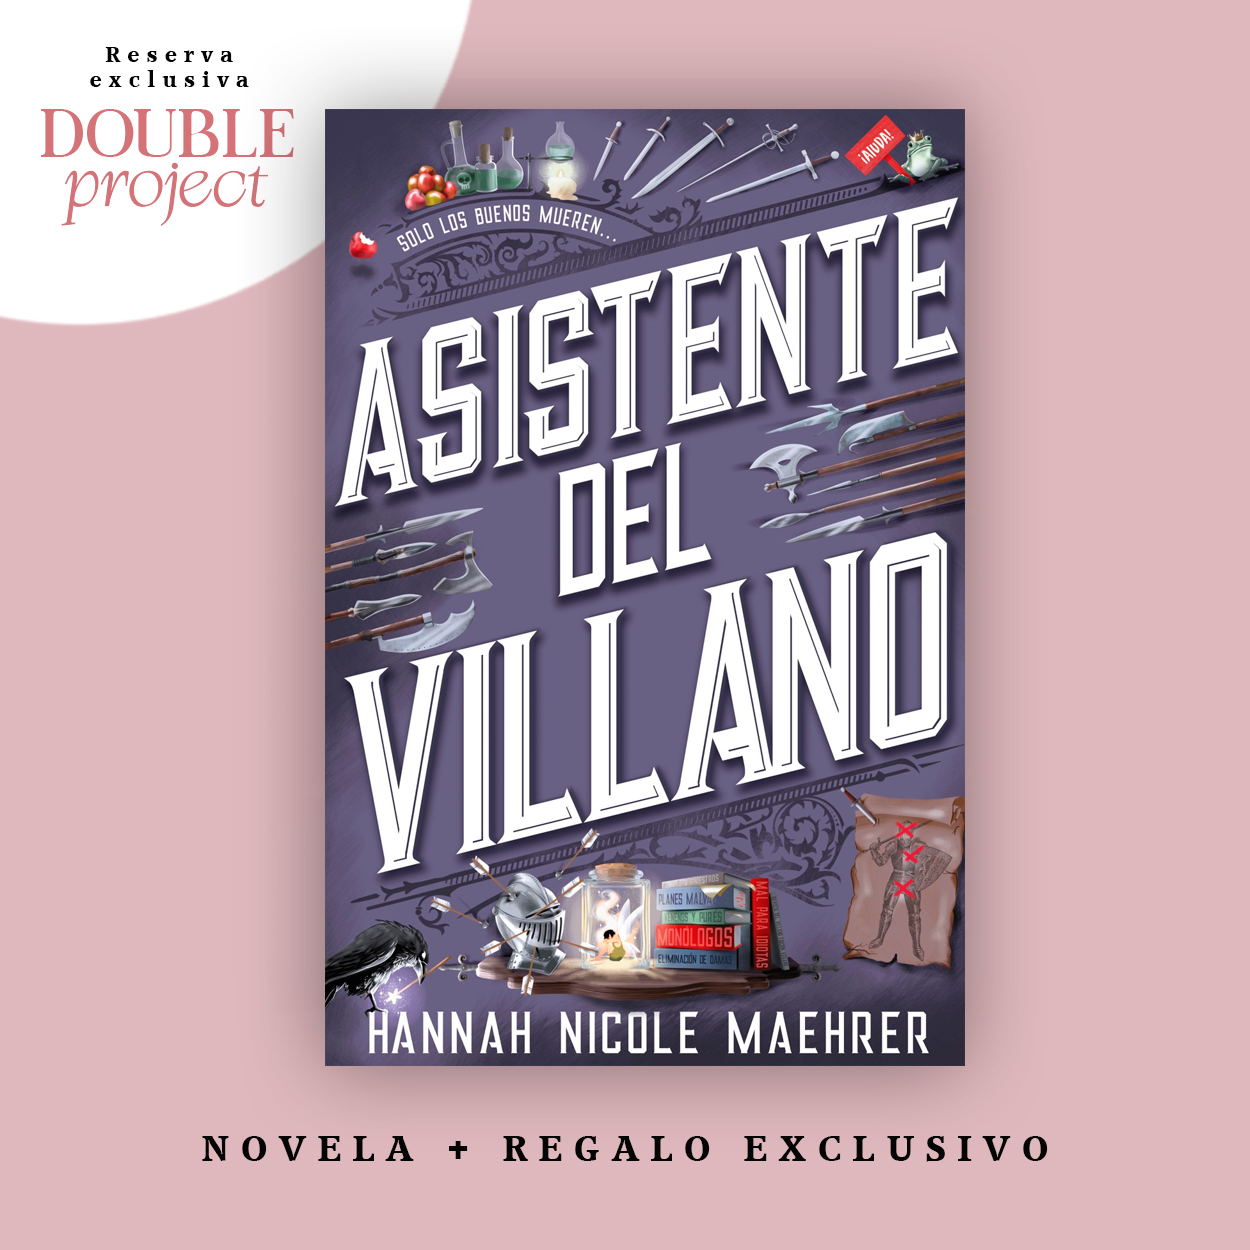 Asistente del villano eBook por Hannah Nicole Maehrer - EPUB Libro